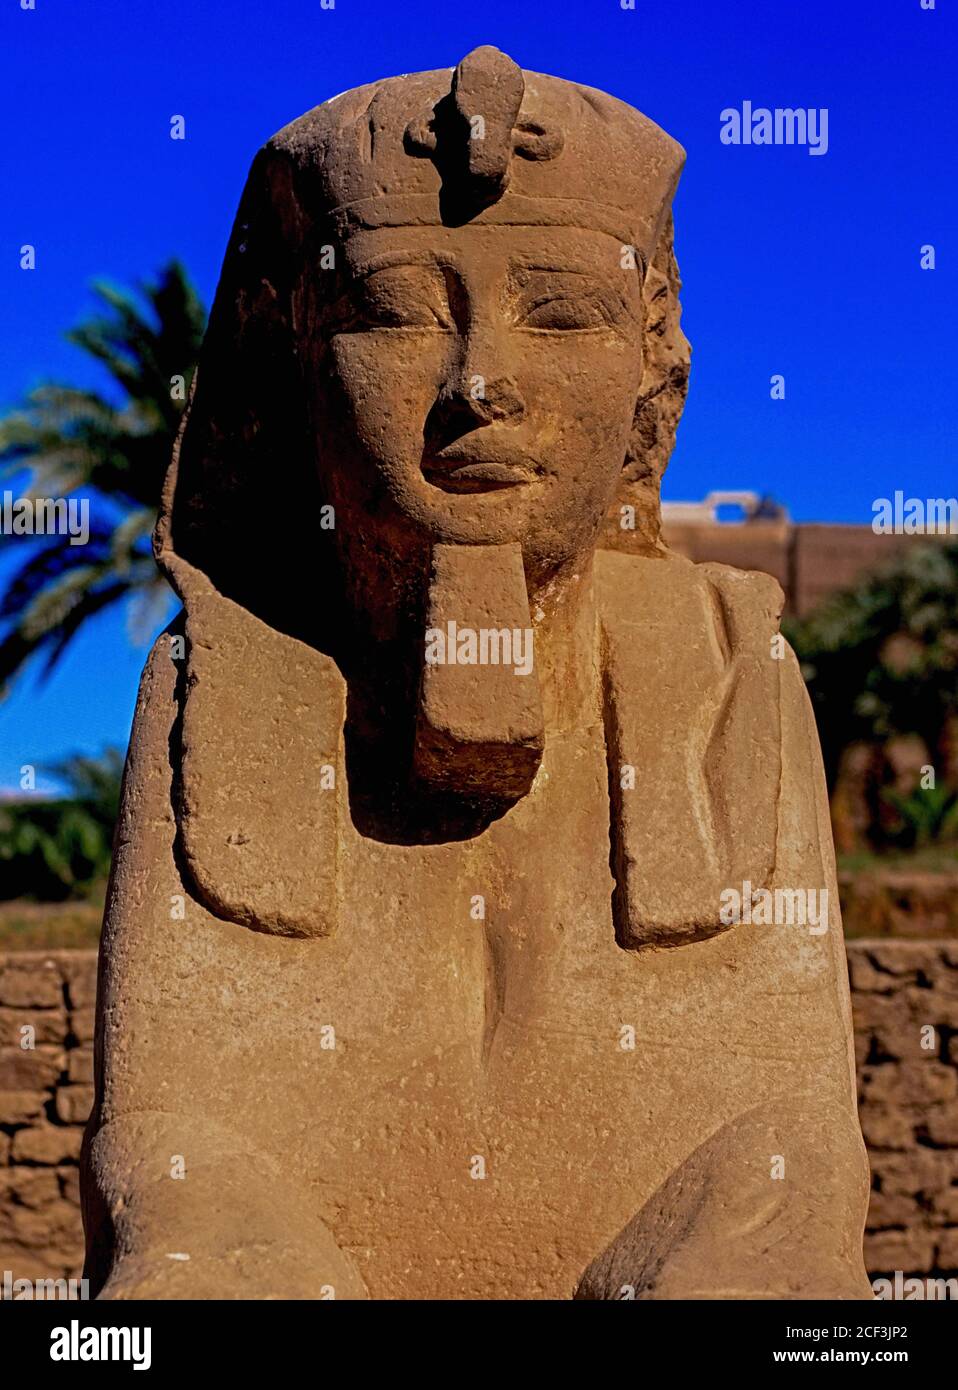 Una sfinge del IV secolo a.C. scolpita con un volto umano nel viale di Sfingi di 3 km (1.5 mi), parte del percorso processionale che collega il Tempio di Luxor con il Tempio di Karnak a Luxor, governatore di Luxor, Egitto. Il viale fu completato durante il dominio del tardo periodo del fondatore della trentesima dinastia, il faraone Nectanebo i, che governò l'impero egiziano da circa il 379 a.C. fino alla sua morte nel 362. Un totale di circa 1,350 sfingi di pietra utilizzati per la linea del Viale, ma molti sono stati rimossi e riutilizzati durante i periodi romano e medievale. Foto Stock